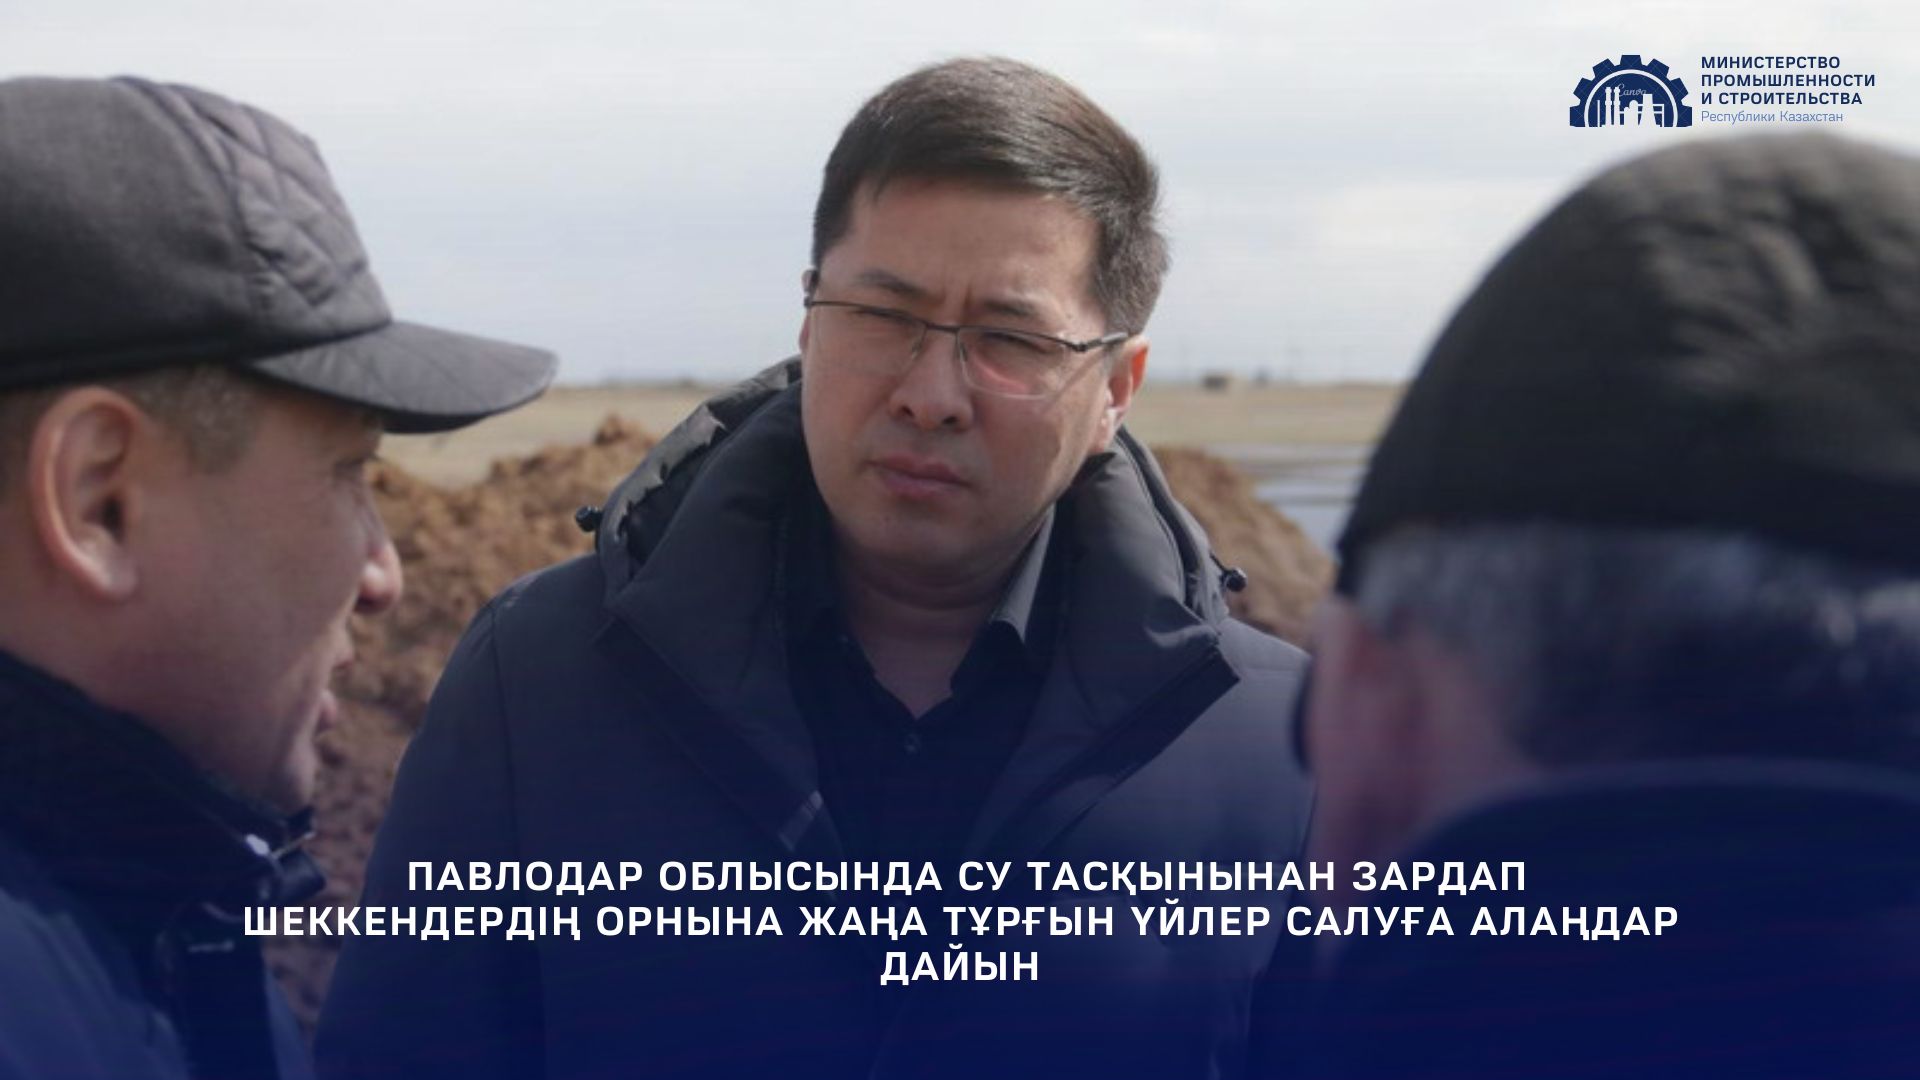 Павлодар облысында су тасқынынан зардап шеккендердің орнына жаңа тұрғын үйлер салуға алаңдар дайын